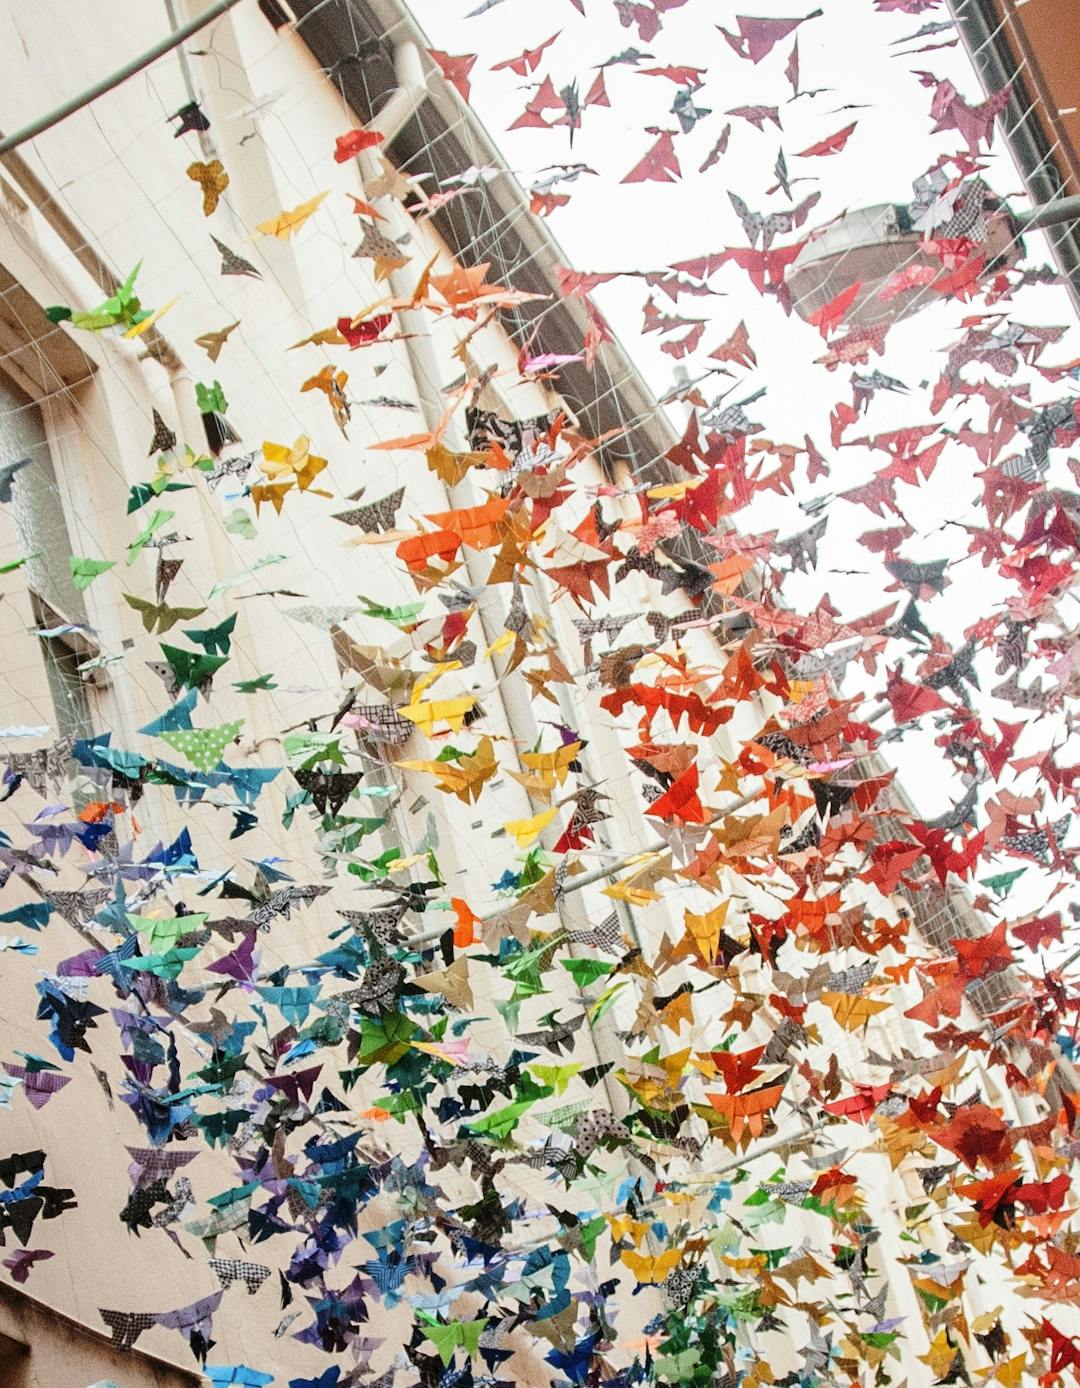 1000 Origami Butterflies hanging in Cinders Lane by artist Genevieve Tavener